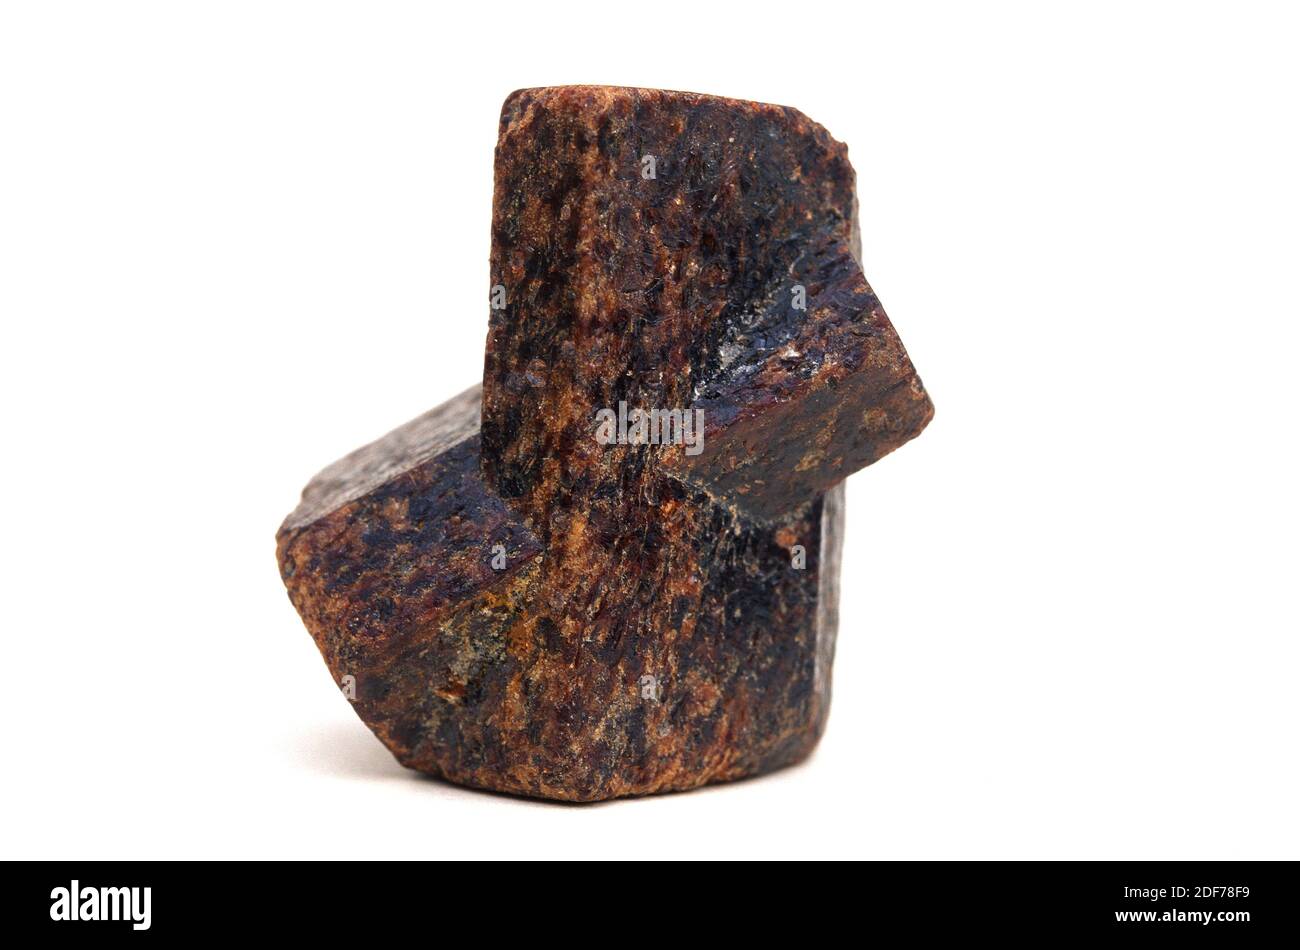 La staurolite est un minerai de silicate d'aluminium de fer. Présentation en forme de croix. Banque D'Images